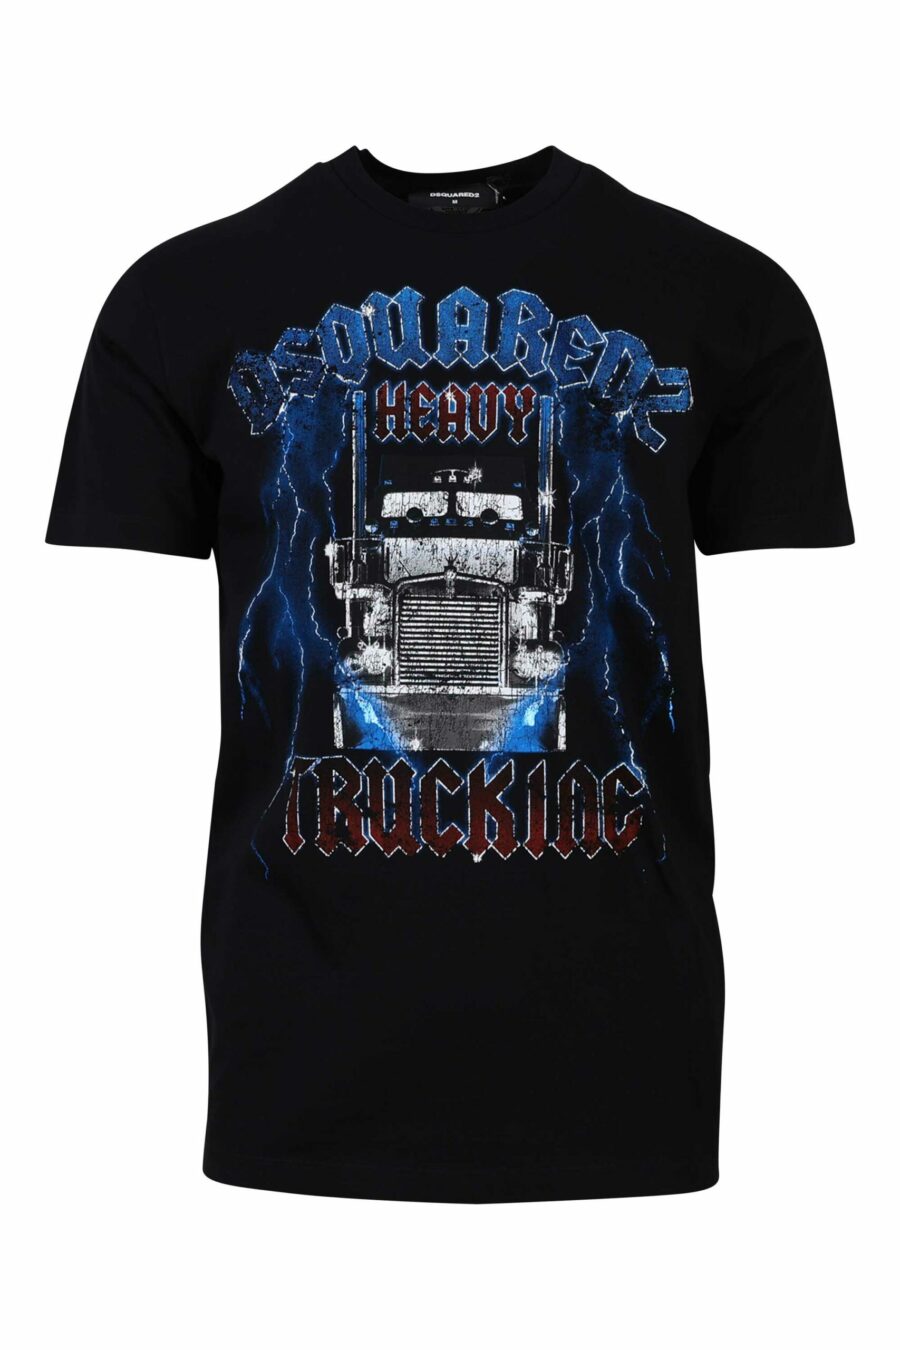 T-shirt noir avec maxilogo gothique bleu et rouge - 8054148085940 1 scaled